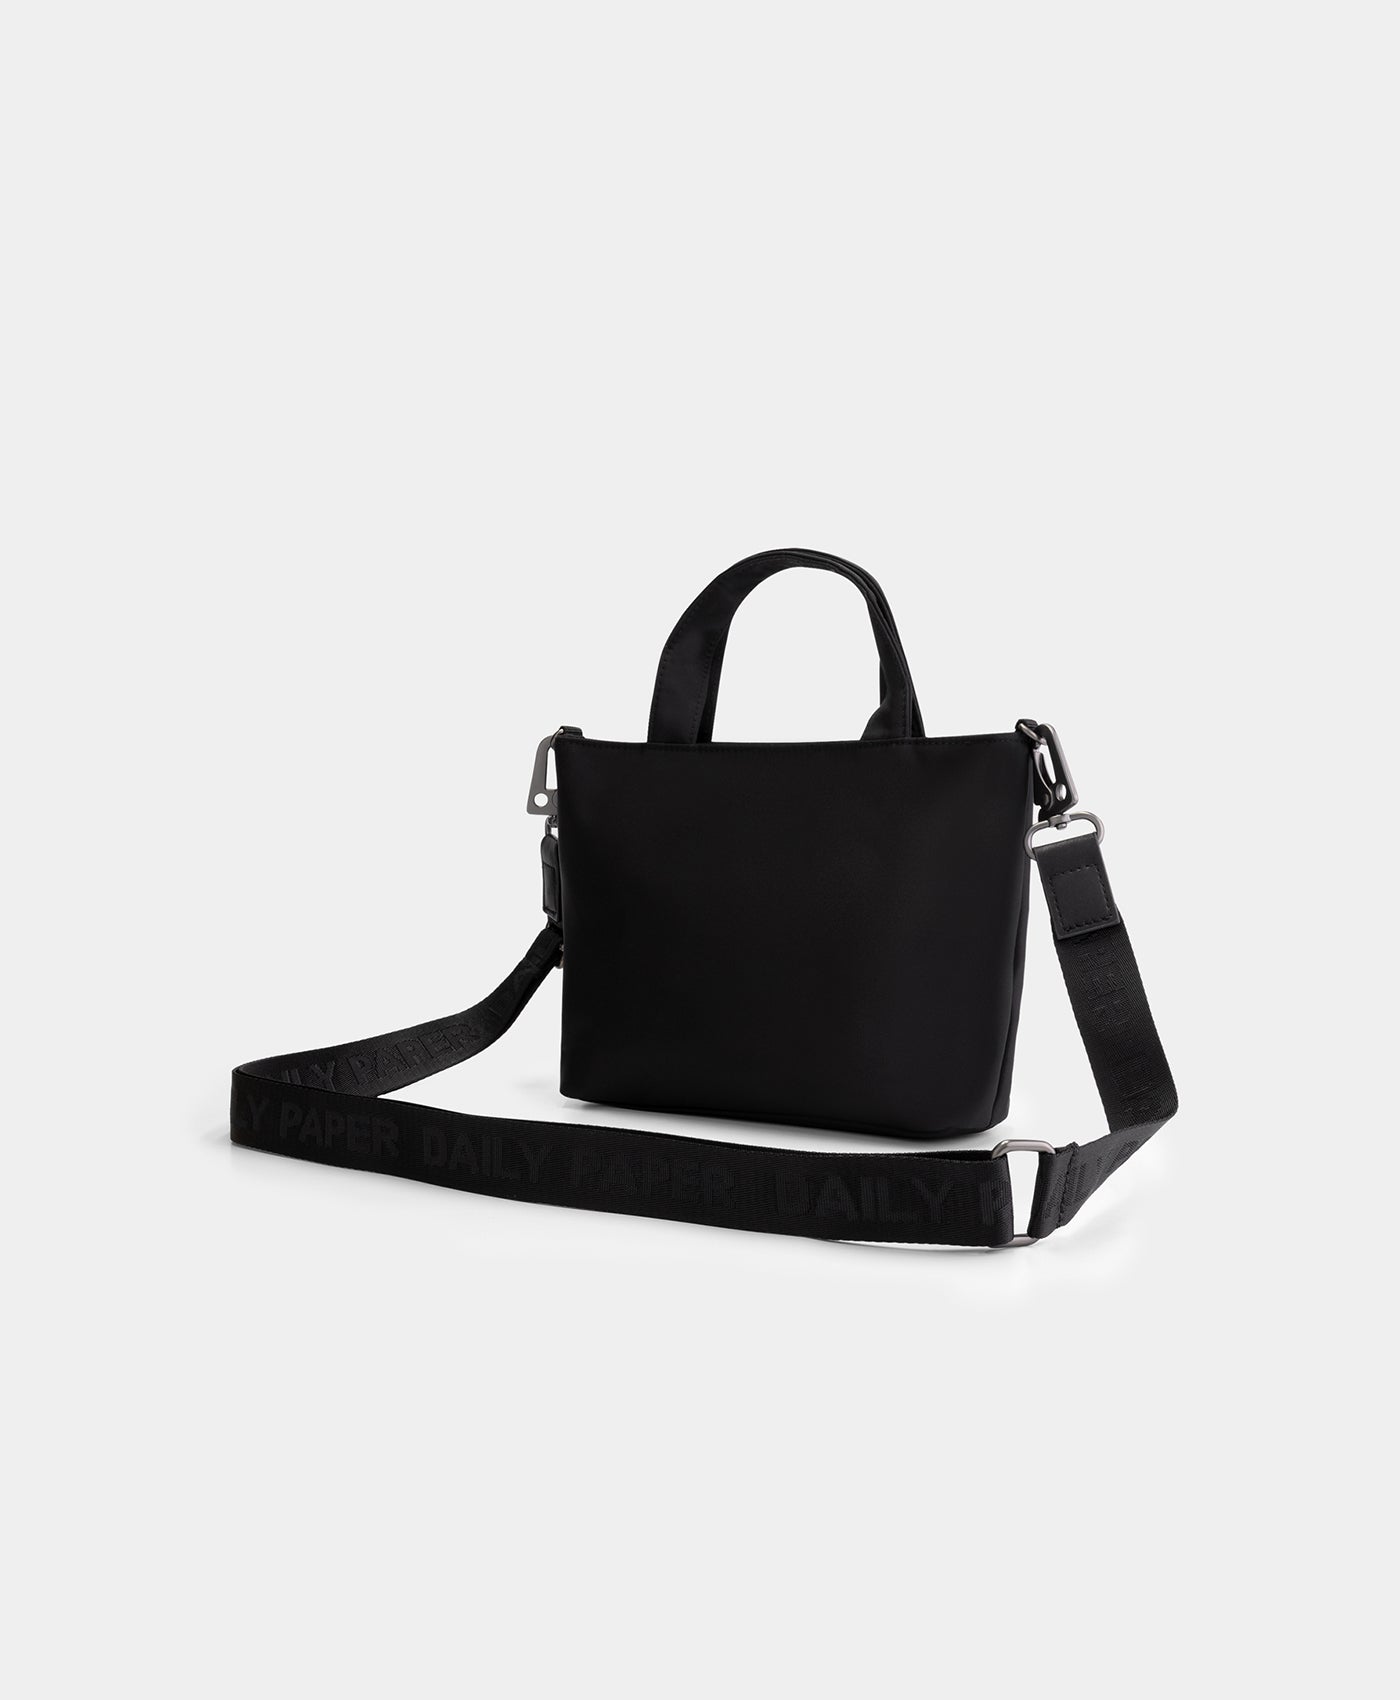 DP - Black Etiny Bag - Packshot - Rear